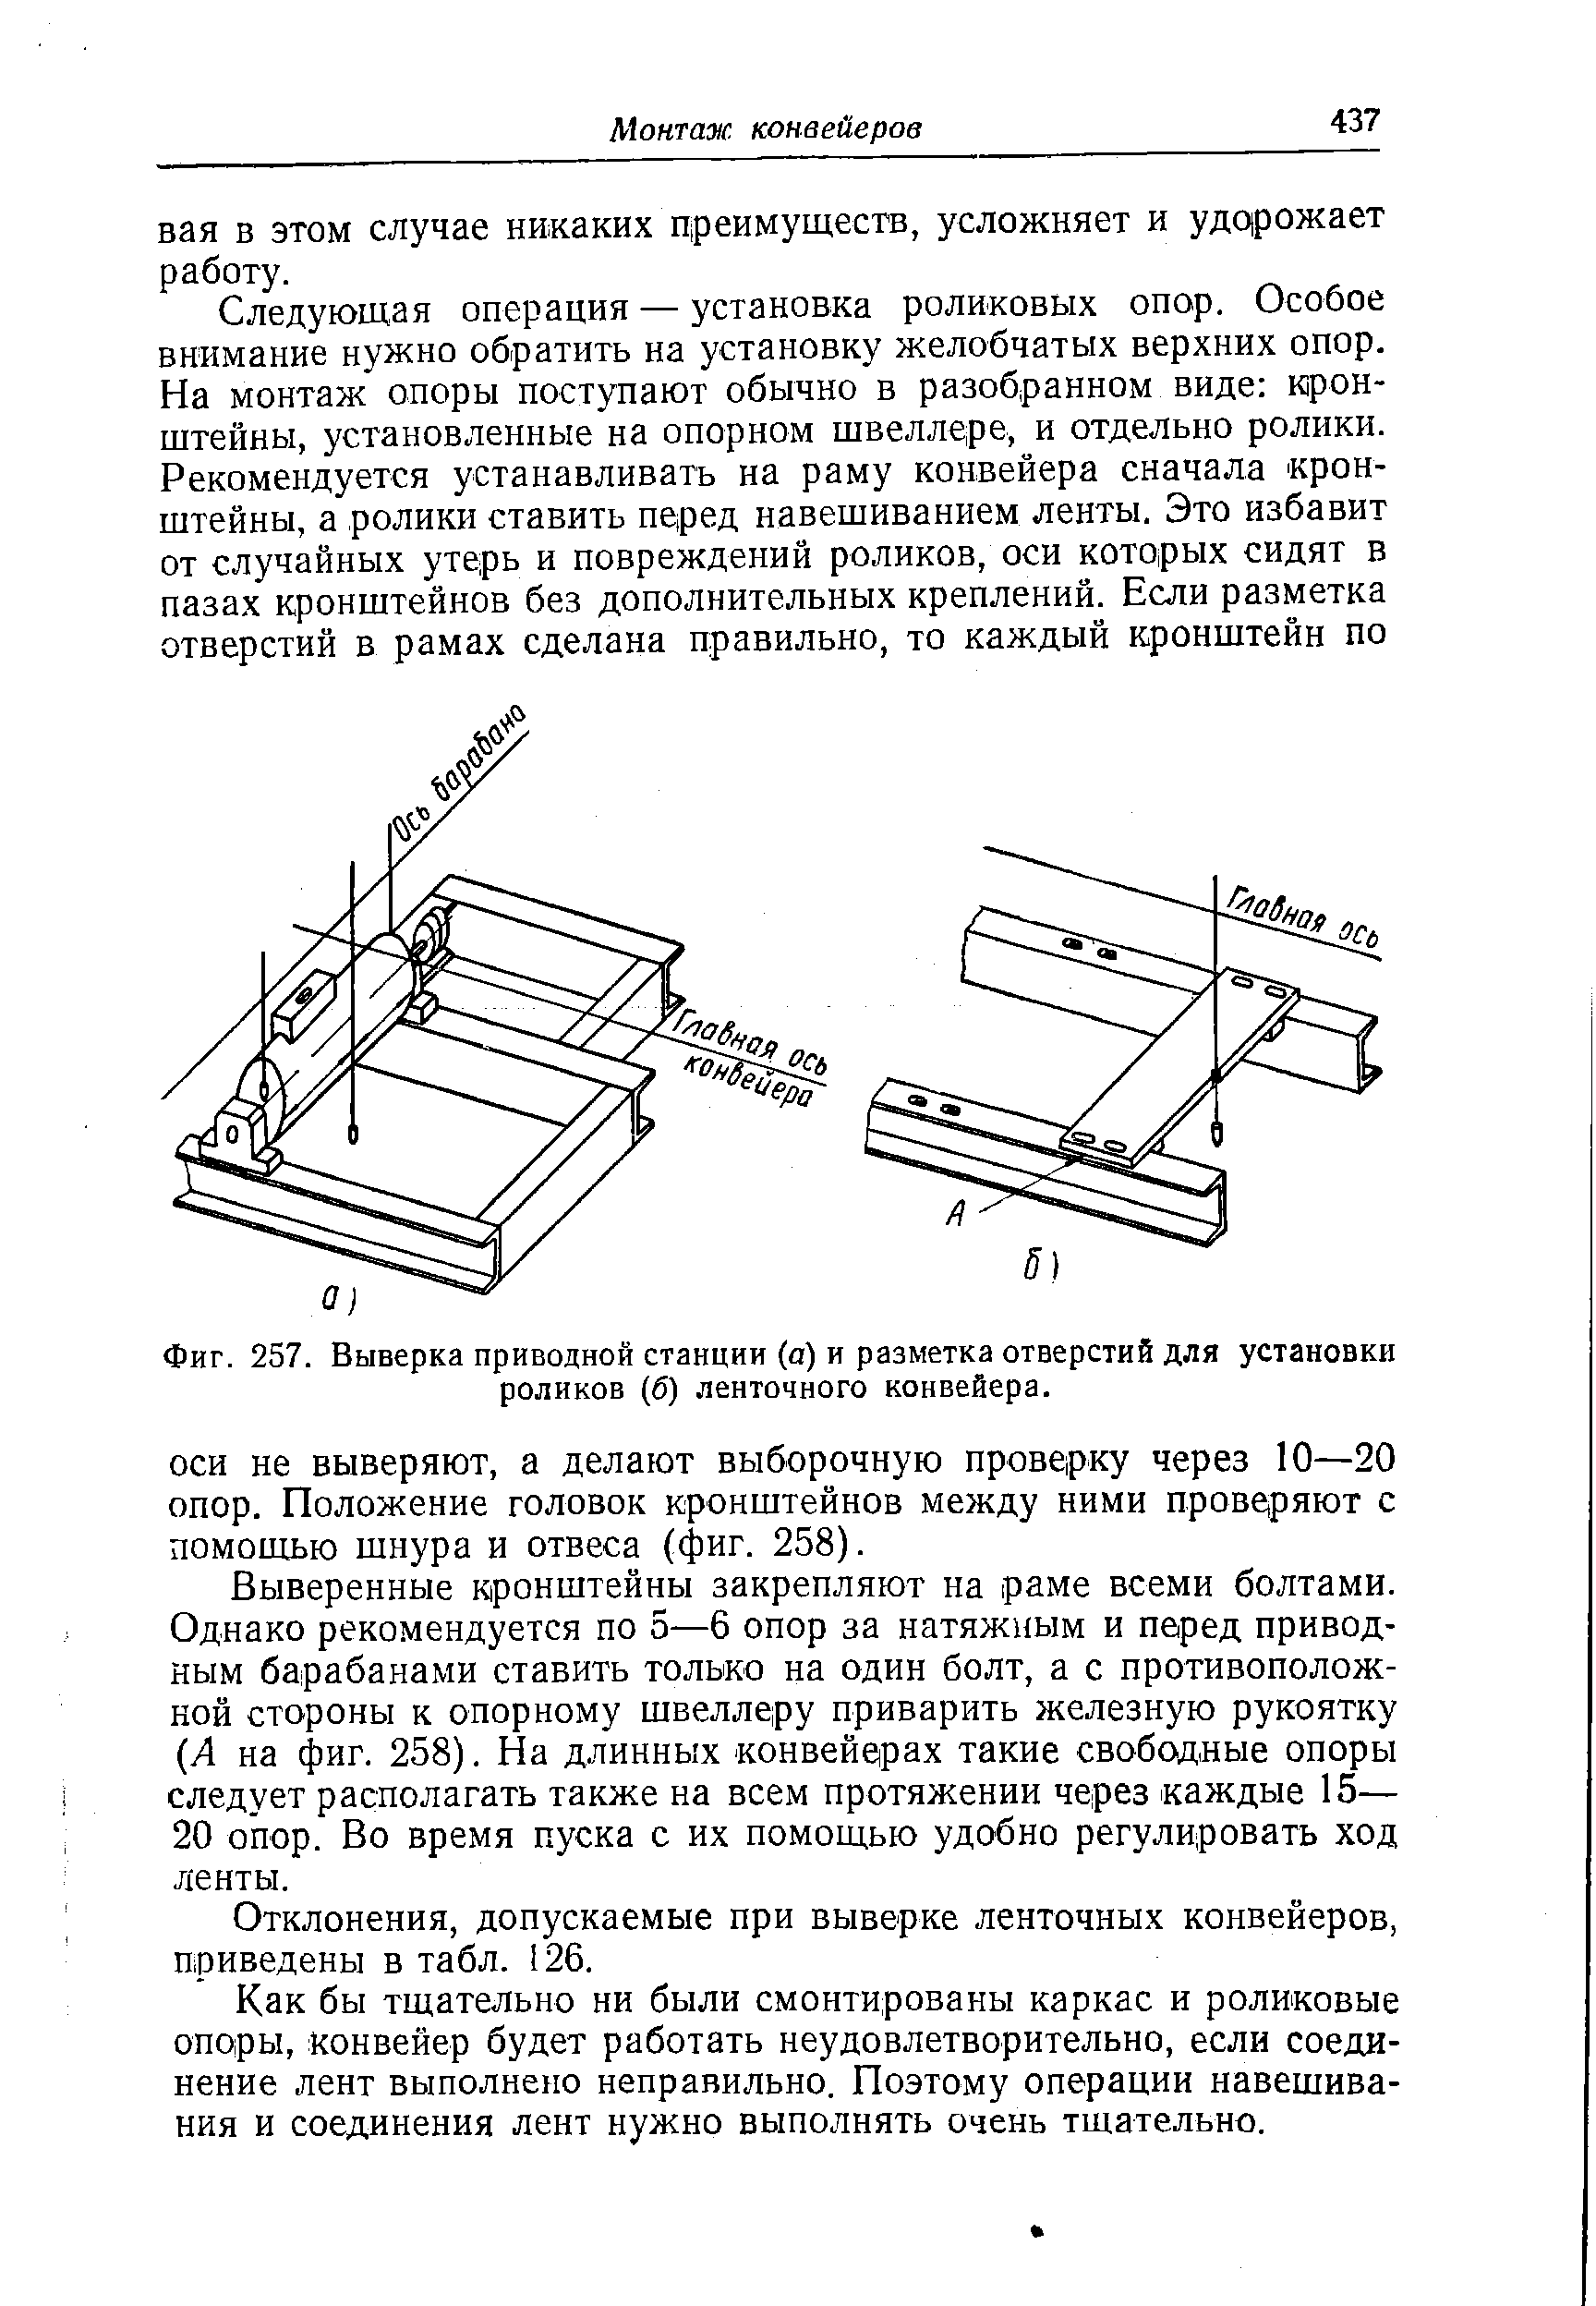 Фиг. 257. Выверка приводной станции (а) и <a href="/info/157389">разметка отверстий</a> для установки роликов (б) ленточного конвейера.
